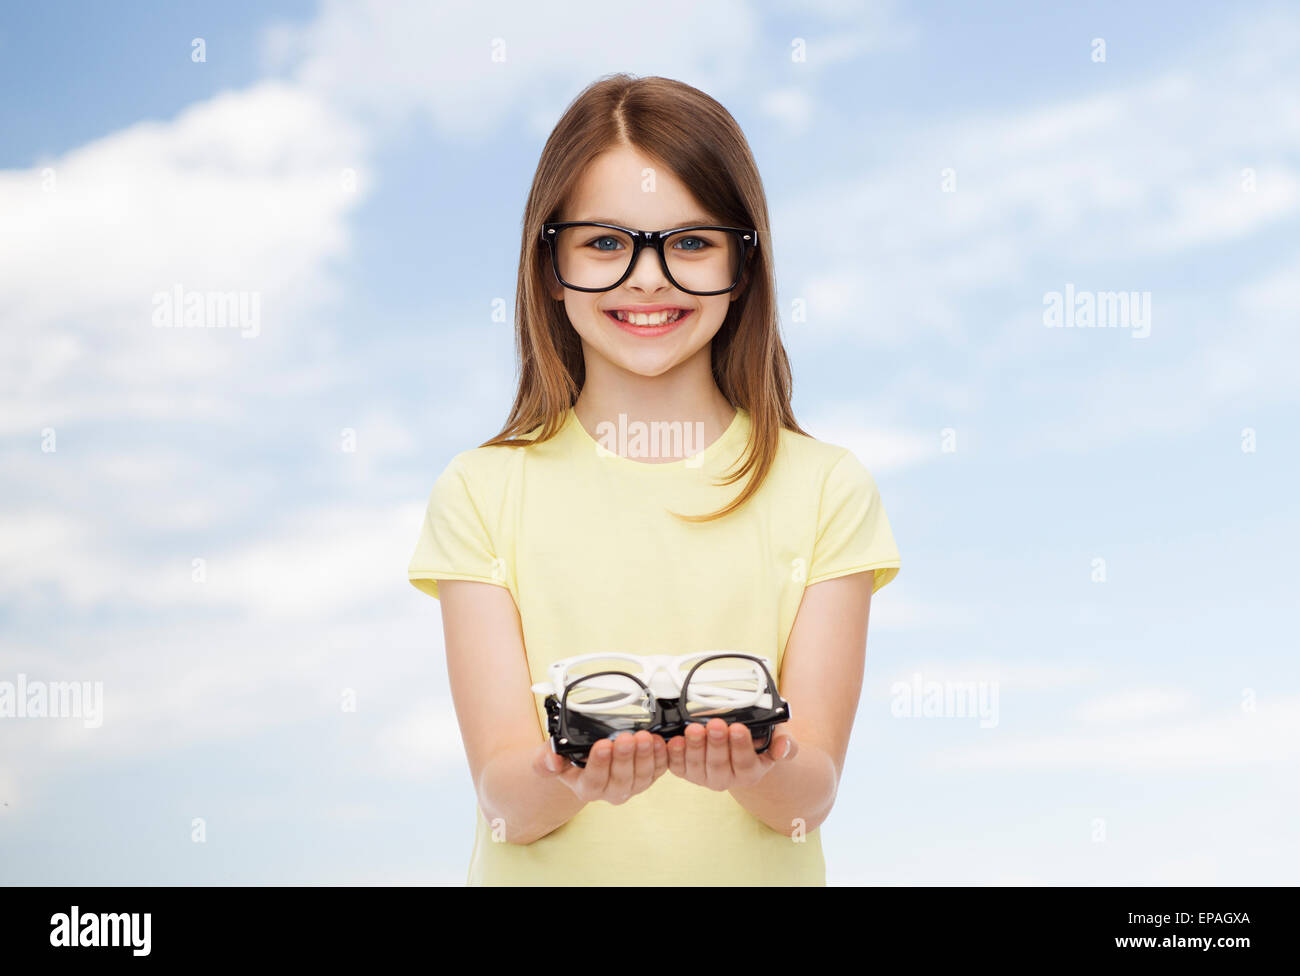 smiling cute little girl in black eyeglasses Stock Photo